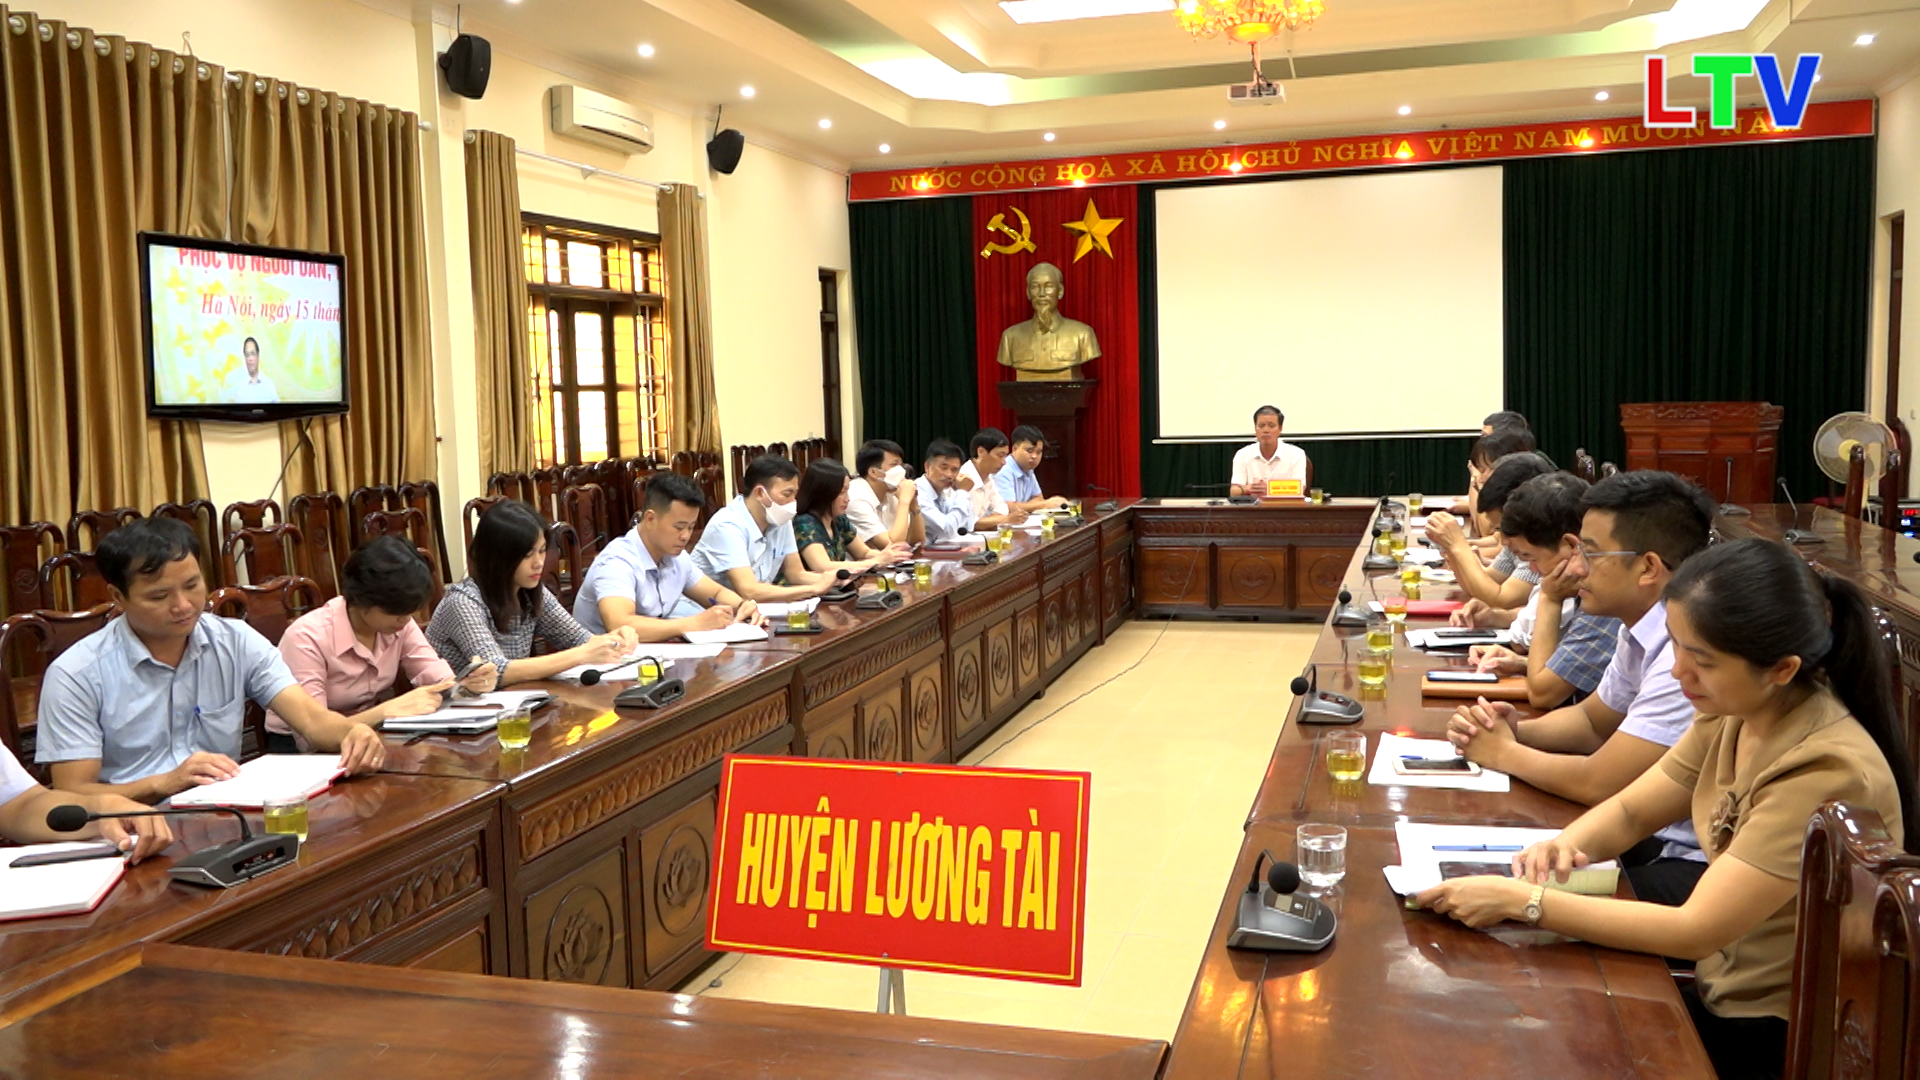 Lương Tài tham dự hội nghị trực tuyến đẩy mạnh cải cách thủ tục hành chính.mp4